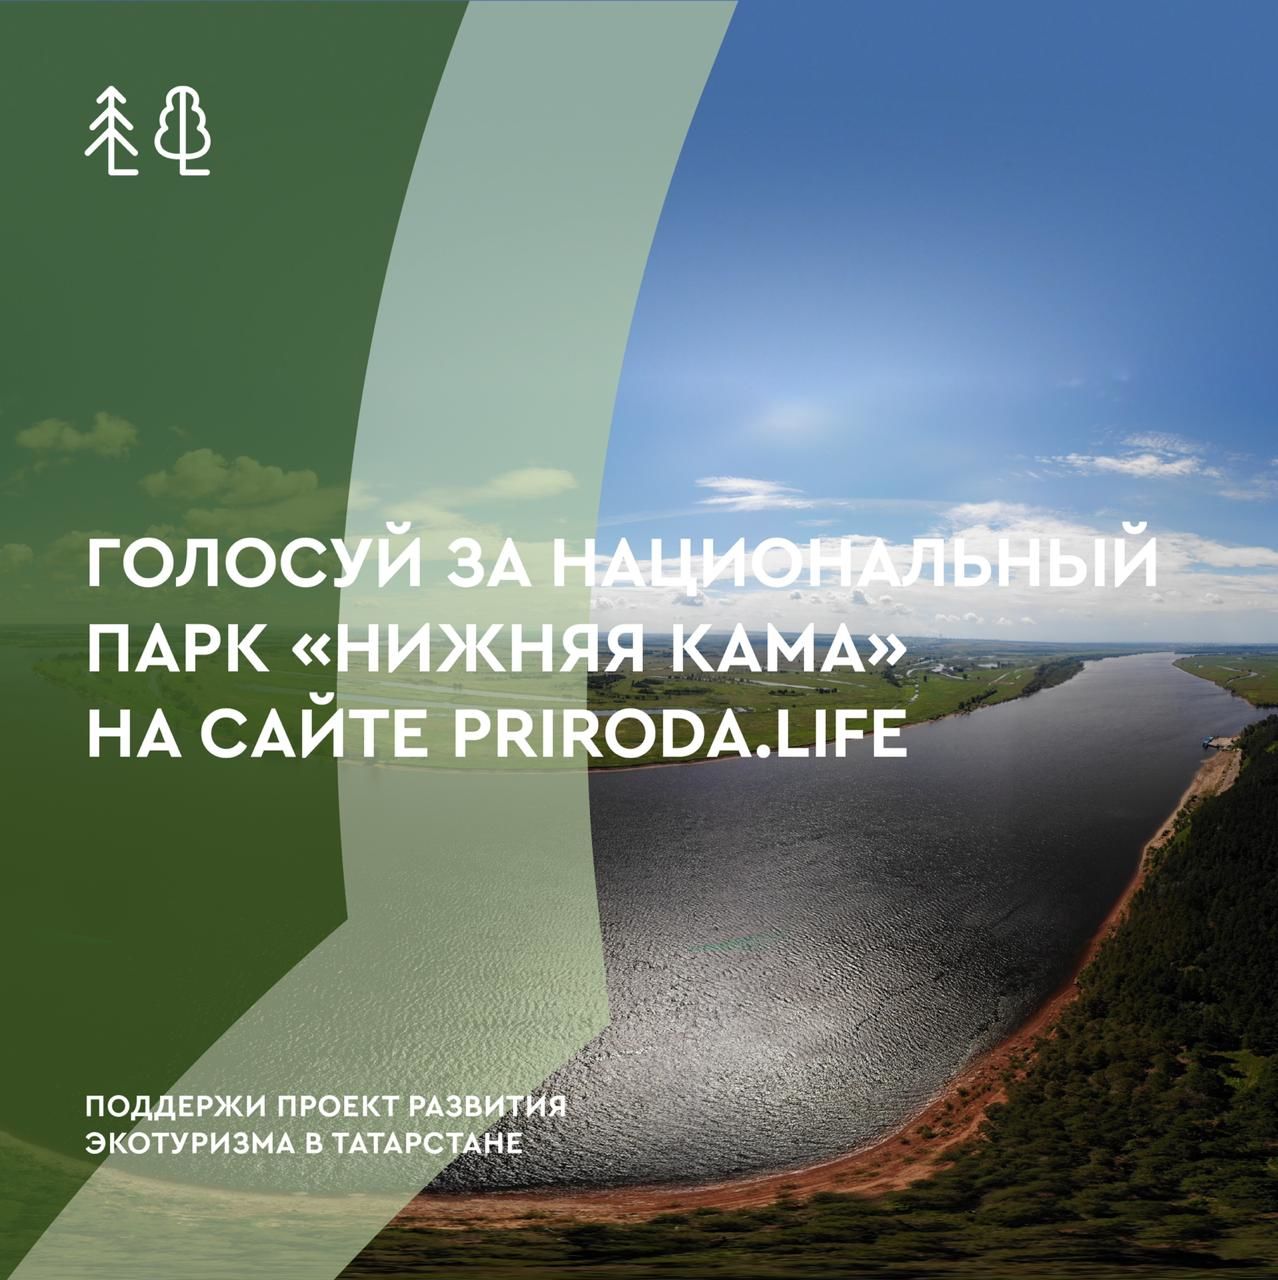 Нурлатцев призывают проголосовать за татарстанские проекты экотуризма. Каждый голос поднимет РТ в рейтинге